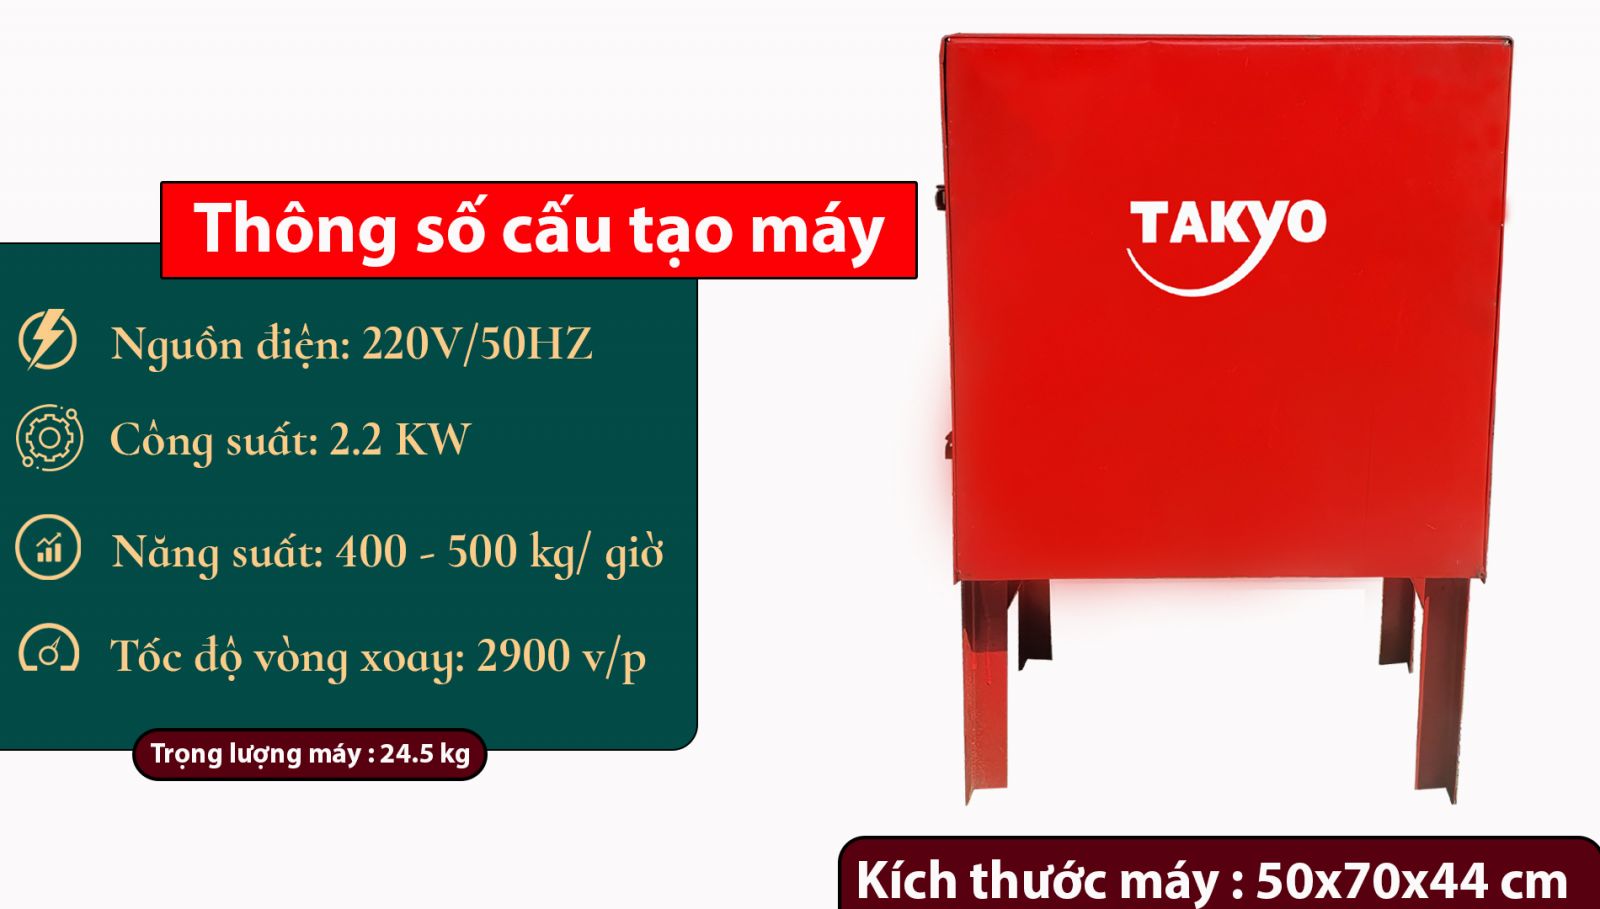 Thông số kỹ thuật máy Takyo TK15